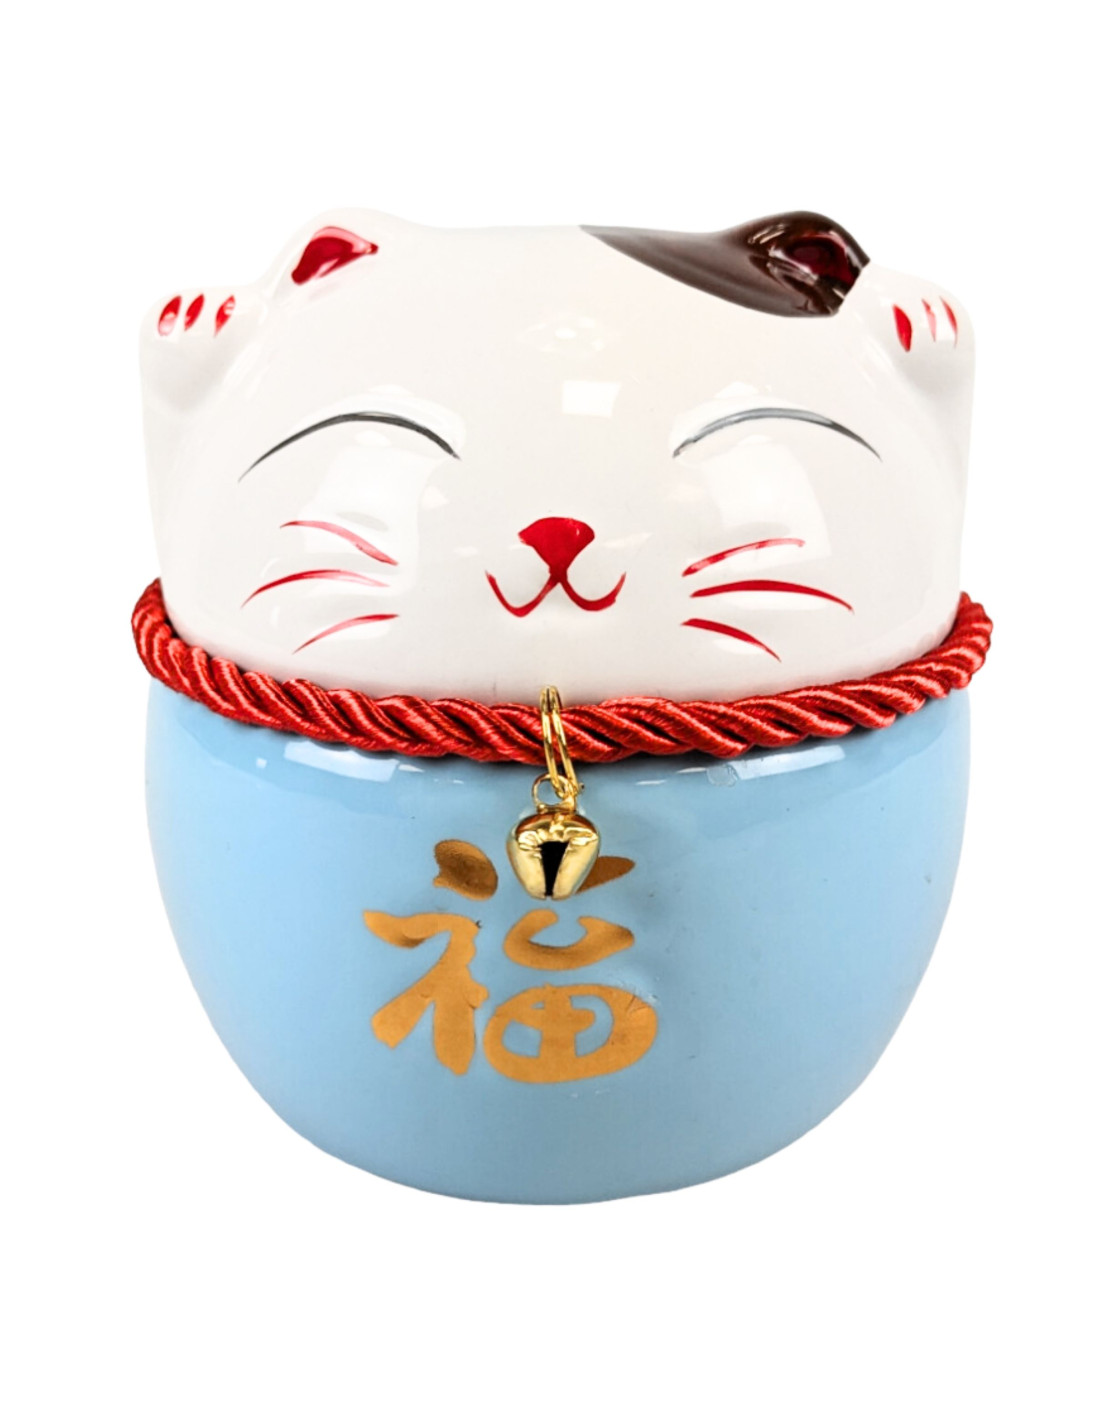 Tirelire chat japonais maneki neko, symbole de bonheur et prospérité.